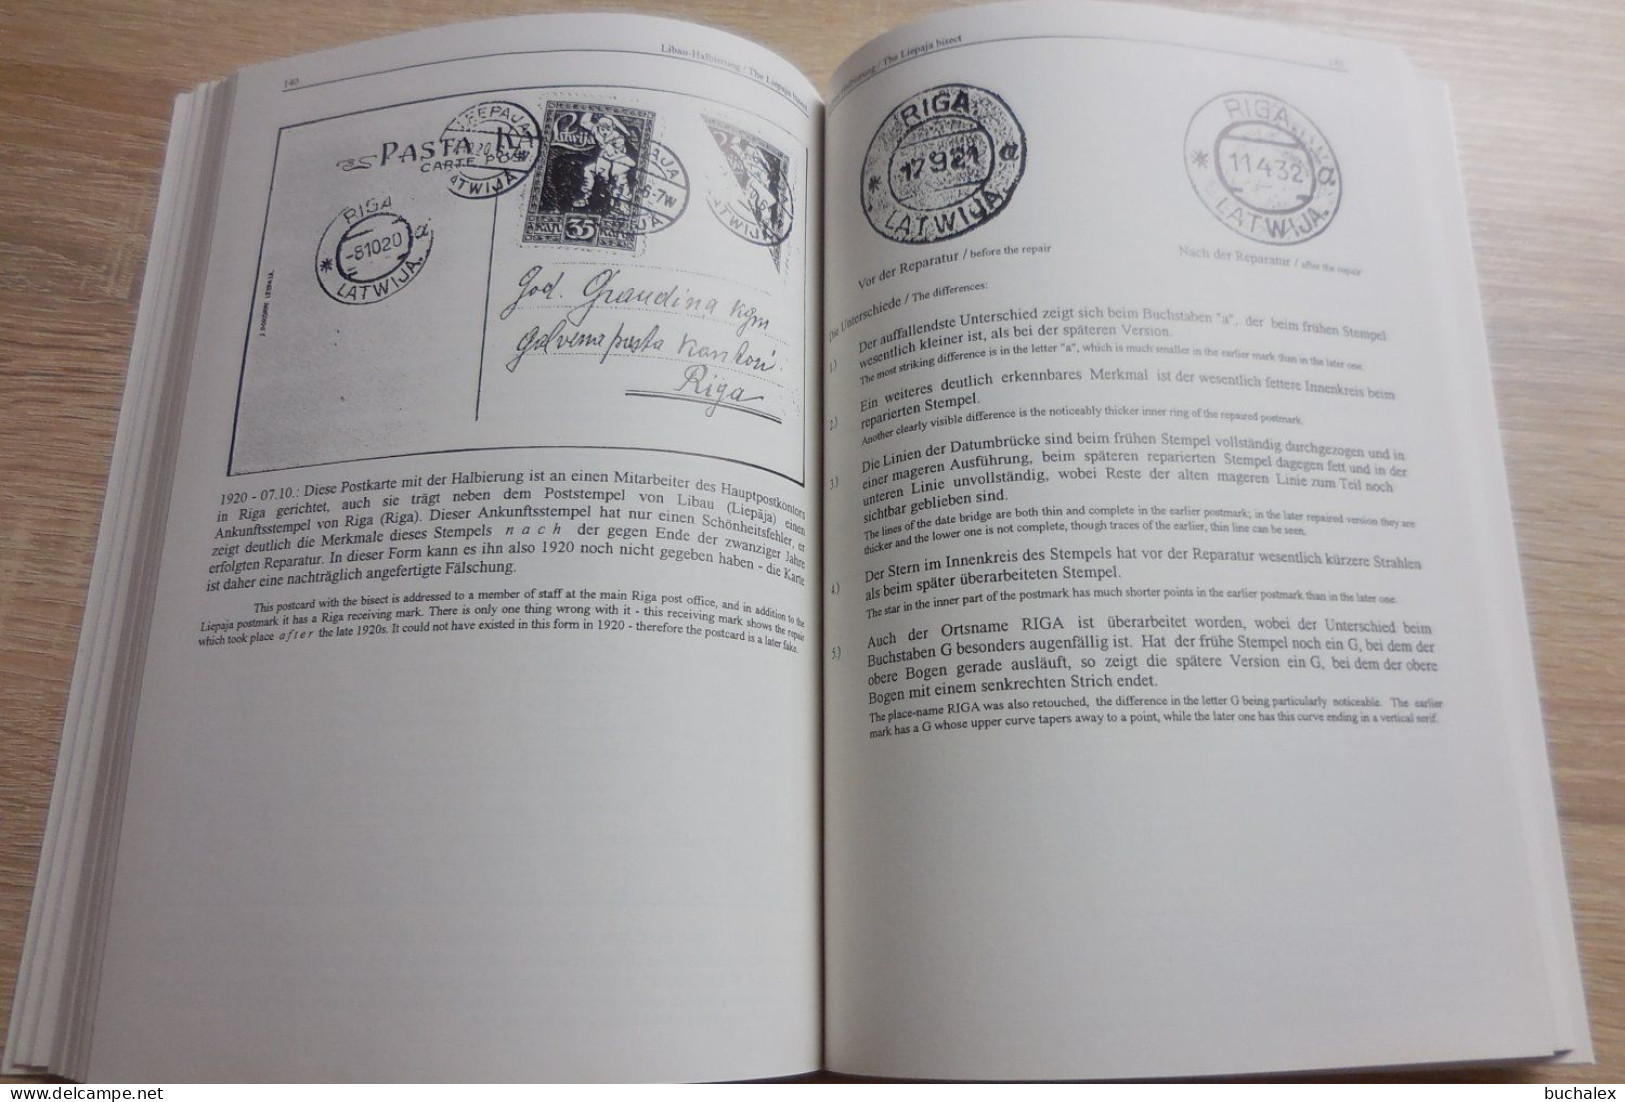 Lettland Handbuch Philatelie und Postgeschichte /Latvia Handbook of Philately and Postal History - Die Briefmarken in...